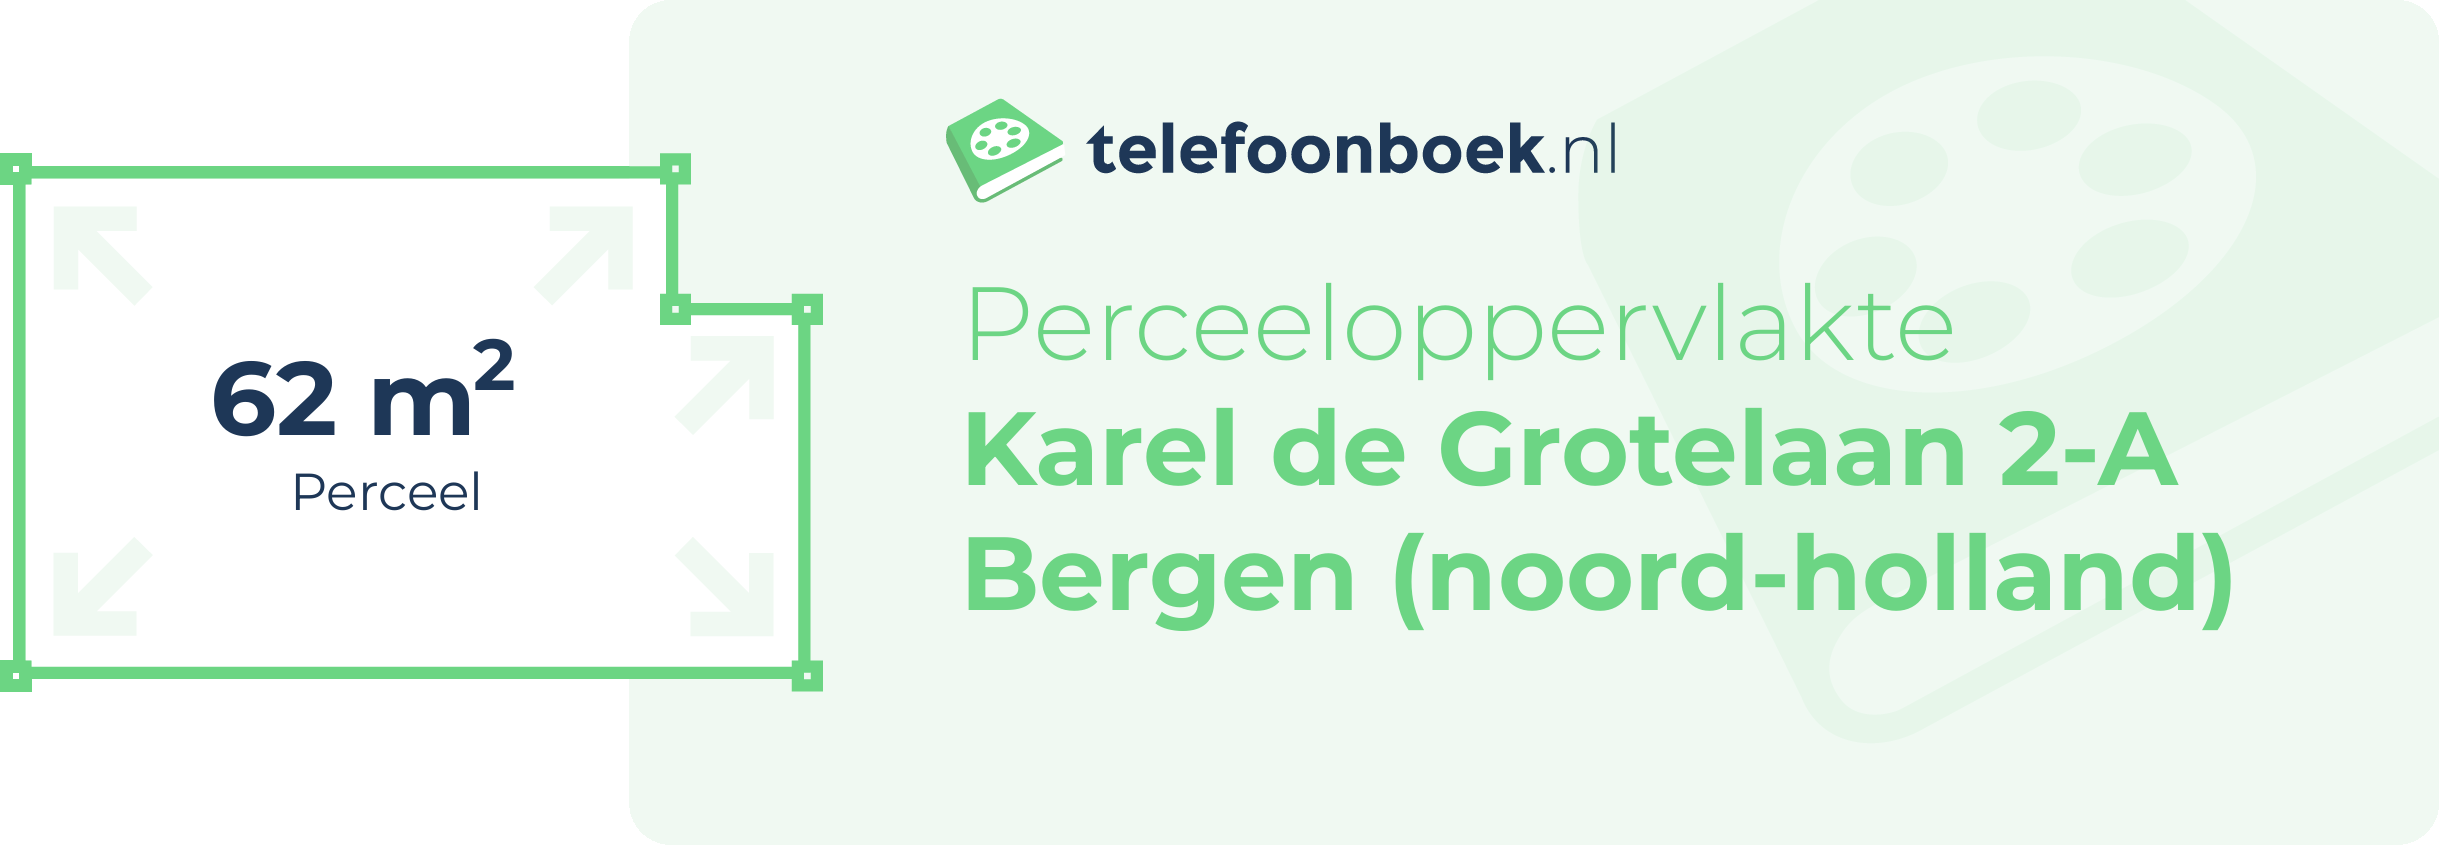 Perceeloppervlakte Karel De Grotelaan 2-A Bergen (Noord-Holland)